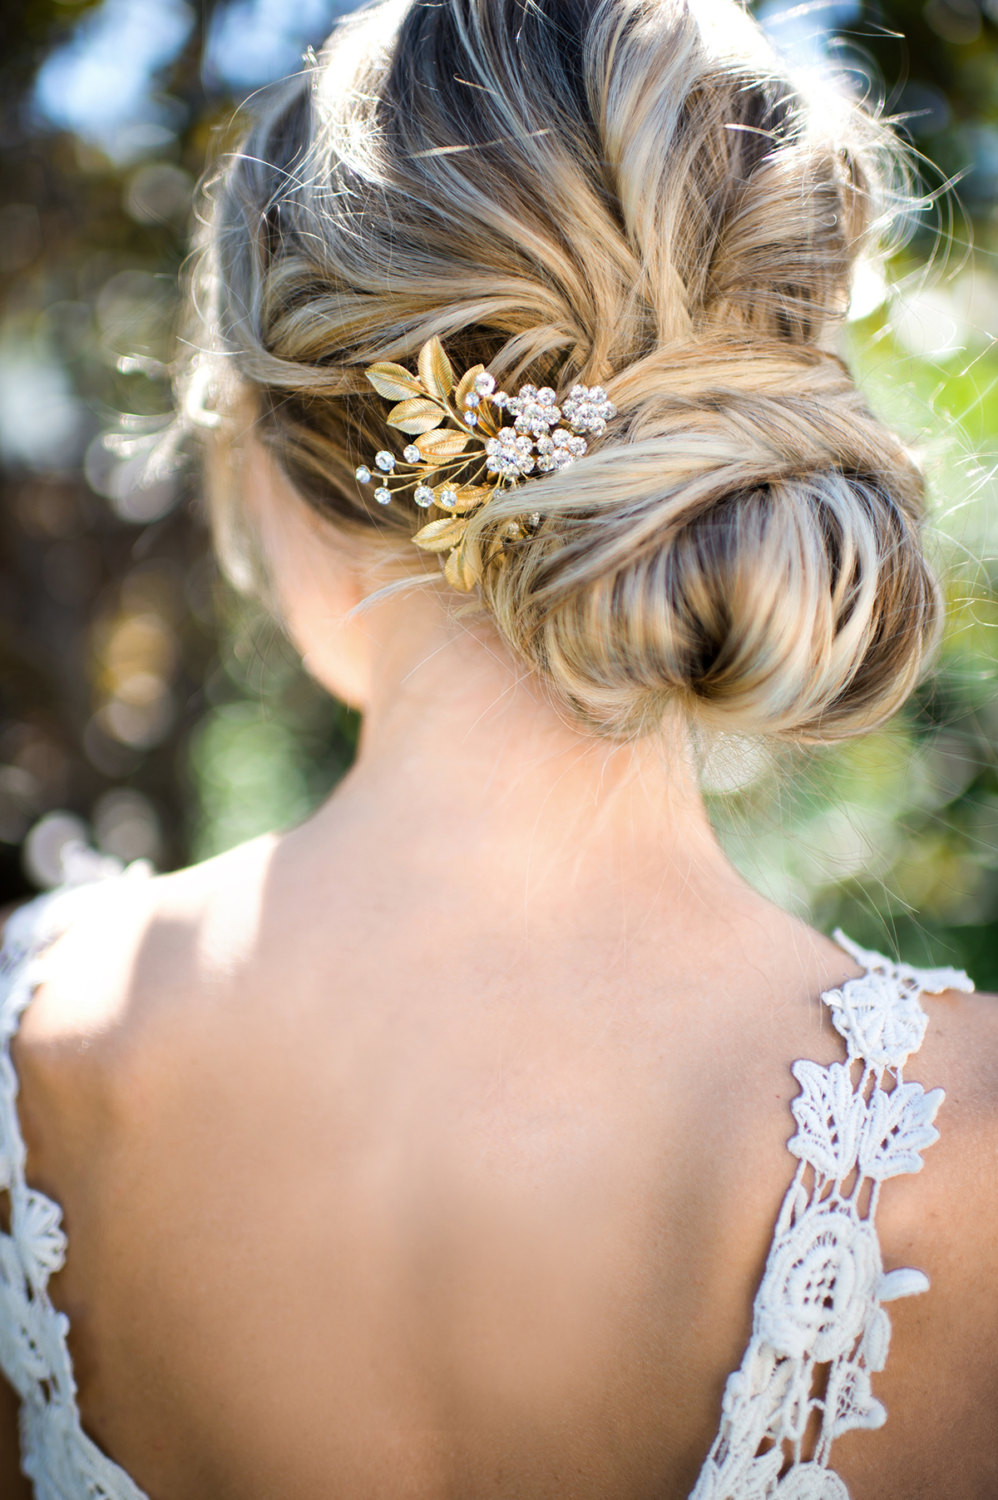 gold leaf hair accessory for weddings | lottie-da designs | http://emmalinebride.com/bride/gold-leaf-hair-accessory/